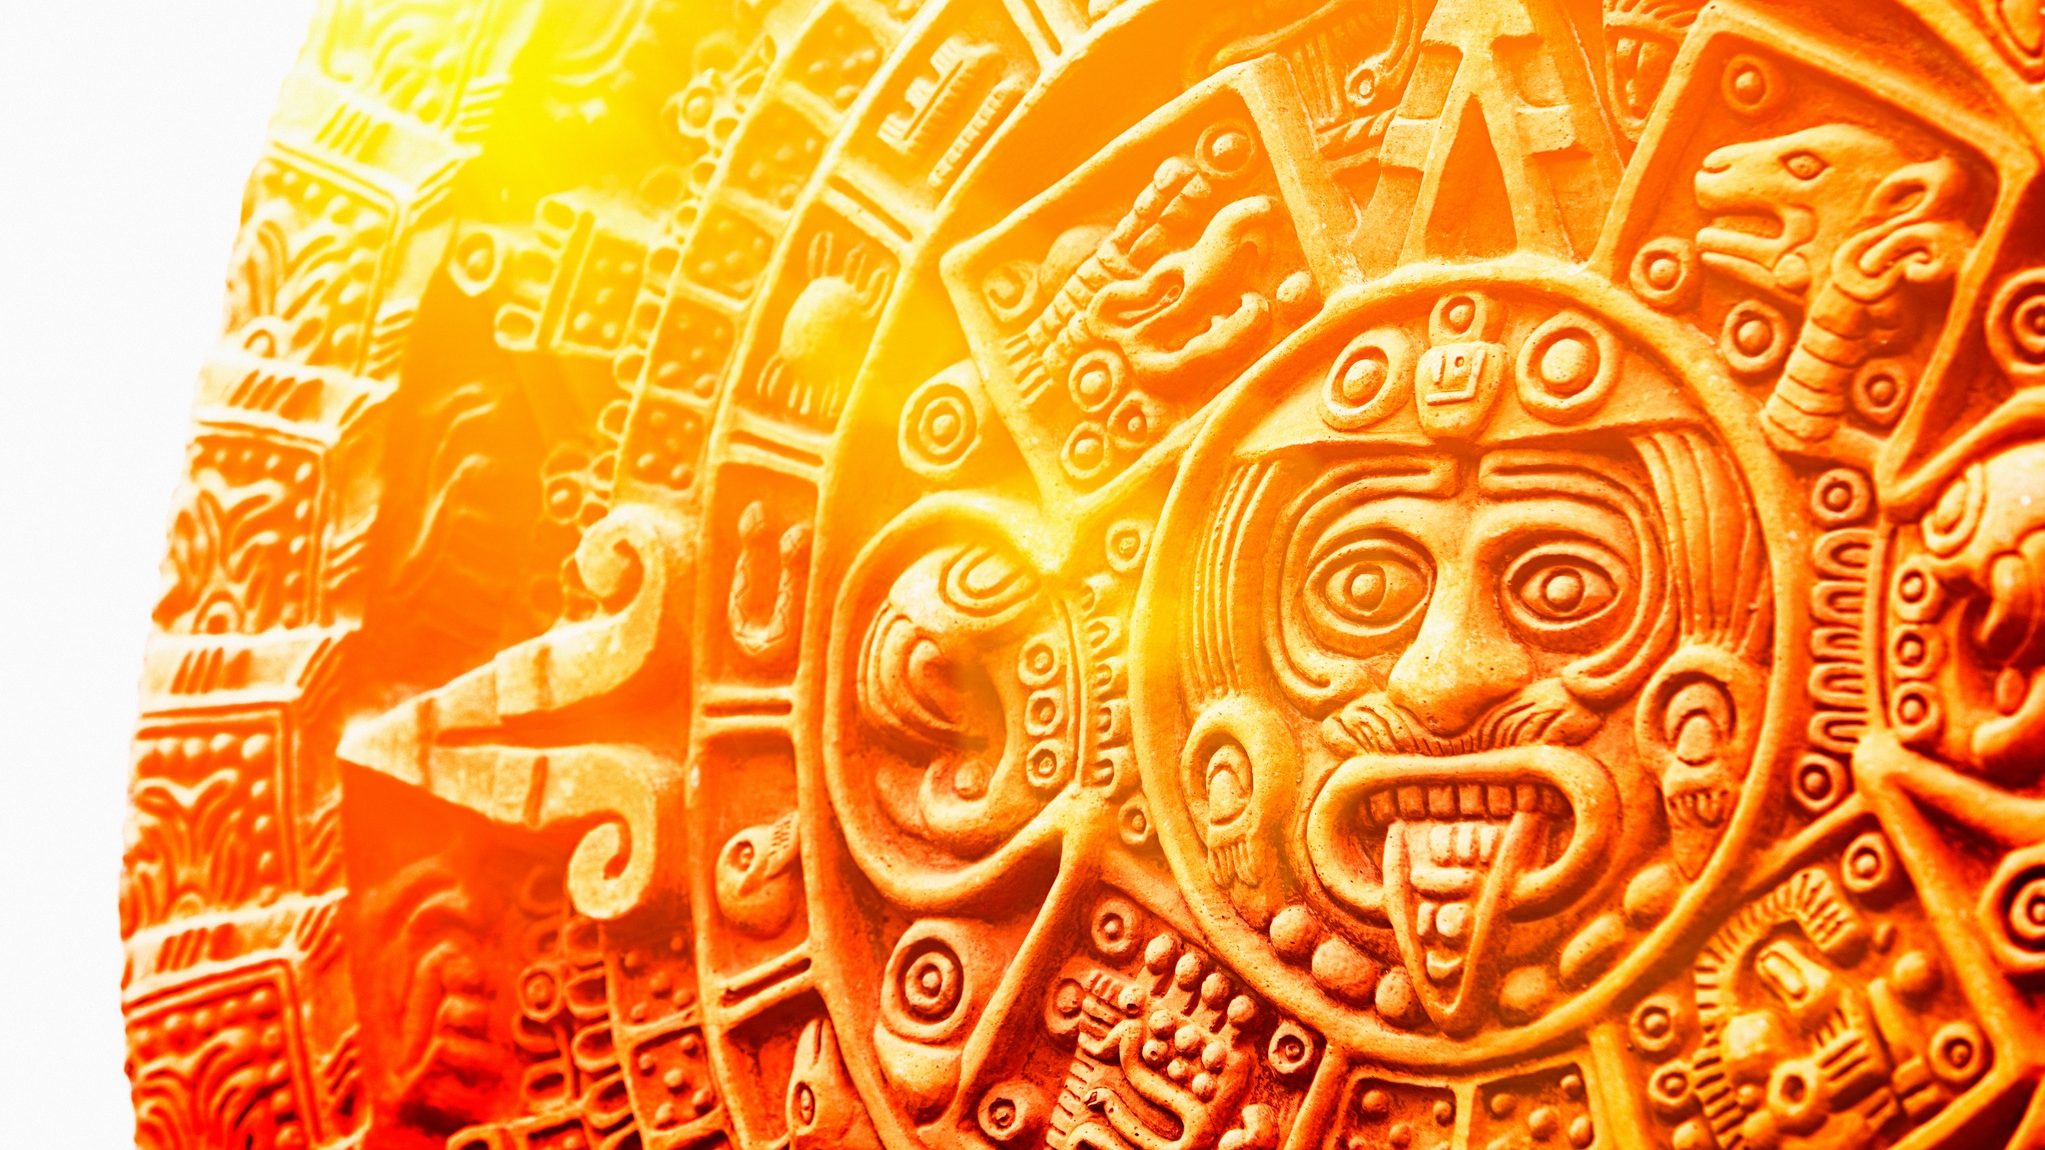 the original mayan calendar